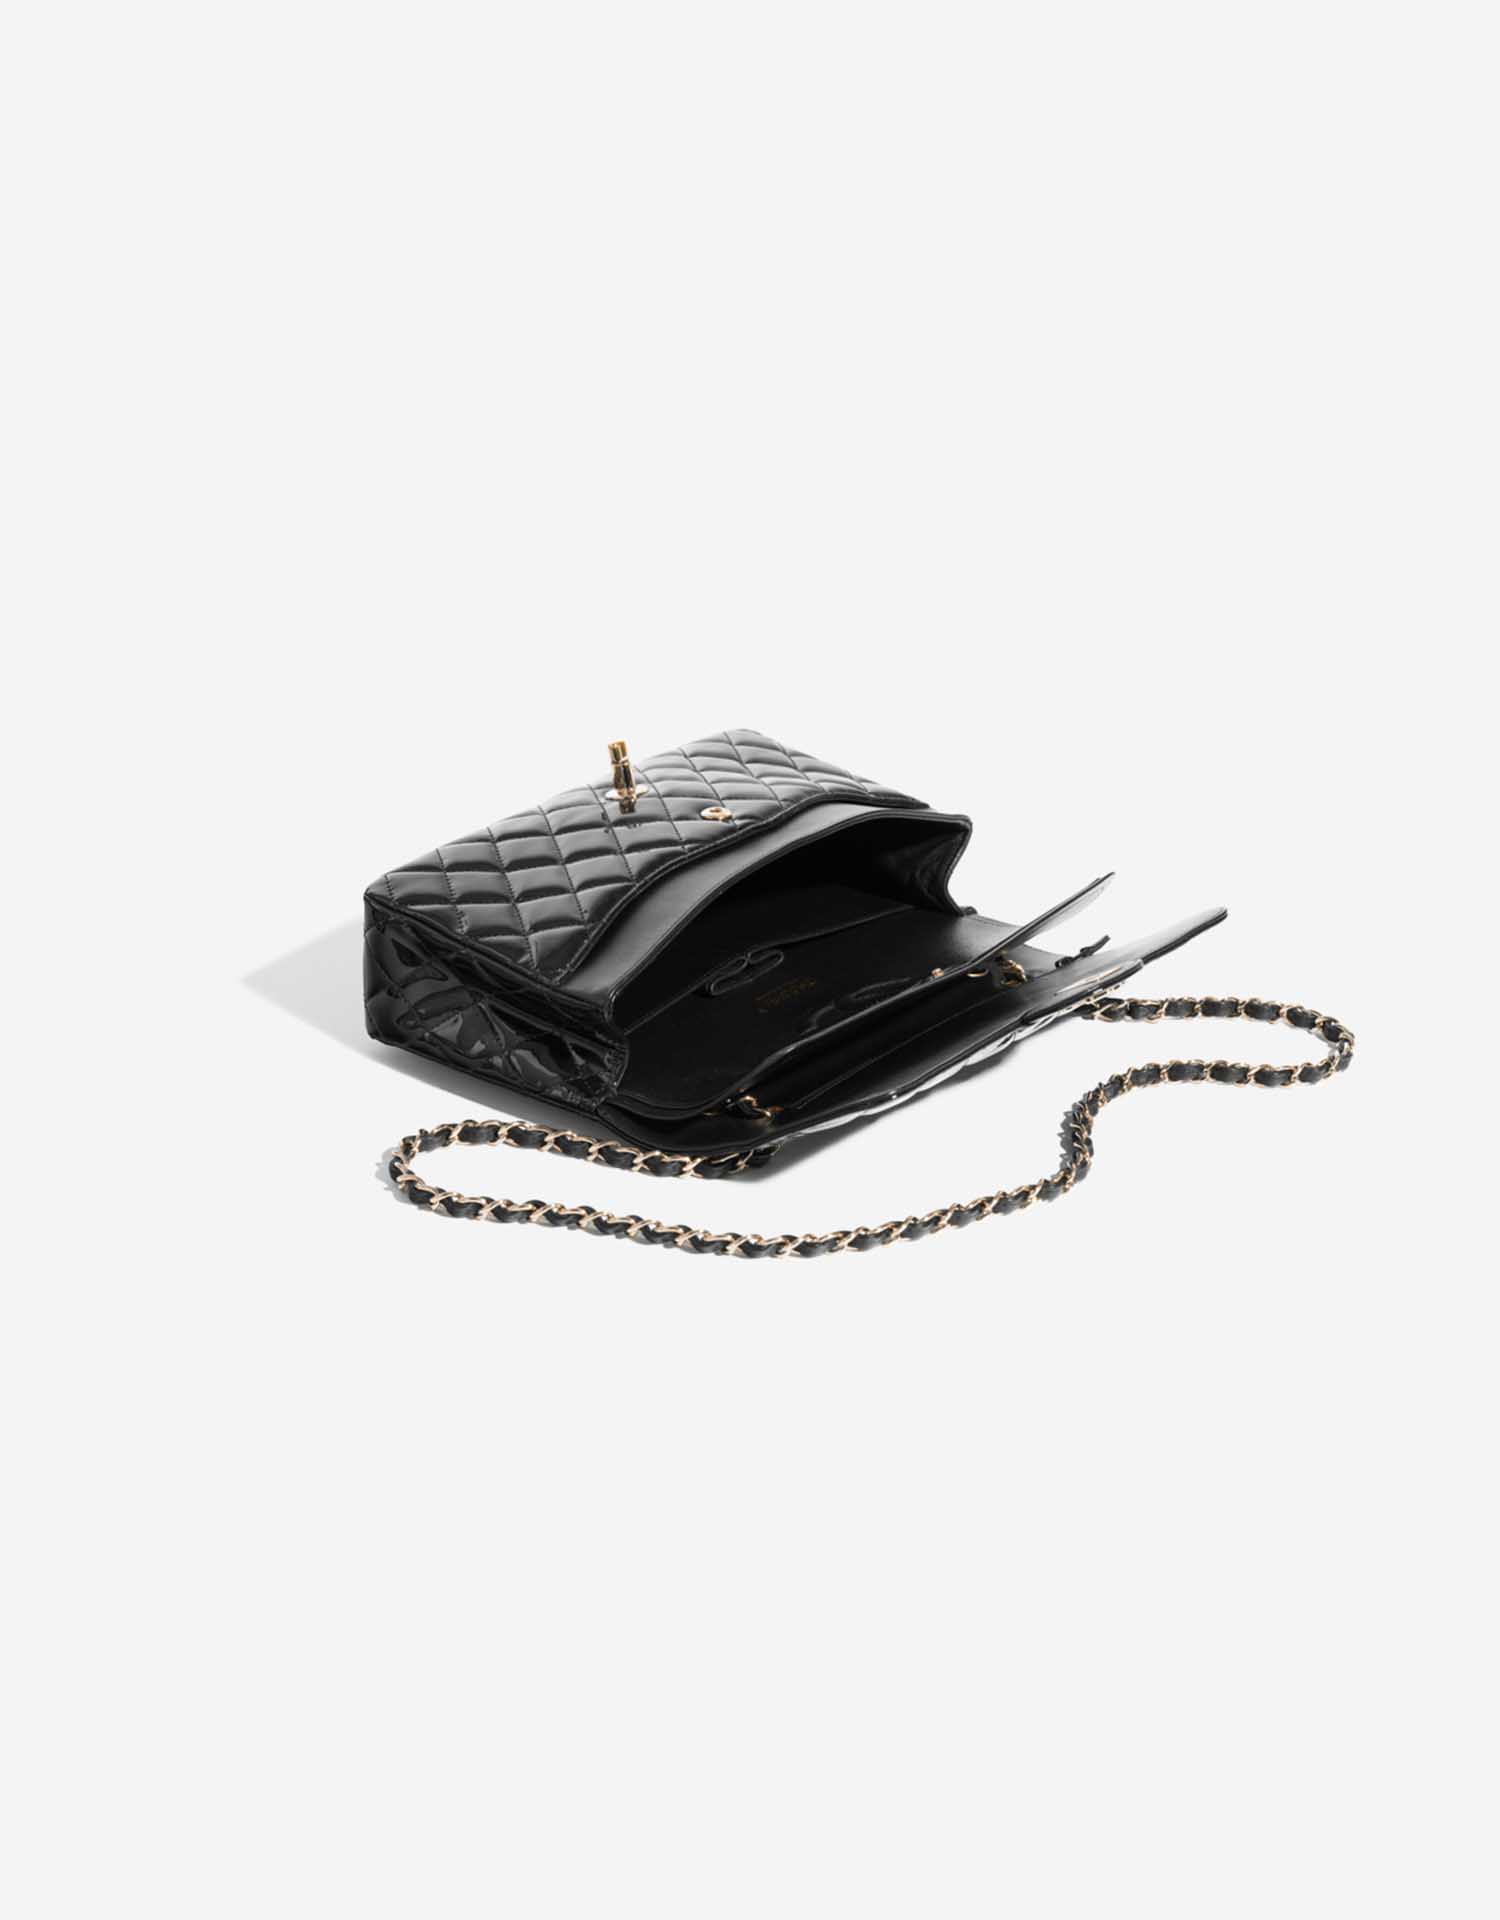 Pre-owned Chanel Tasche Timeless Medium Lackleder Schwarz Schwarz Innenseite | Verkaufen Sie Ihre Designer-Tasche auf Saclab.com